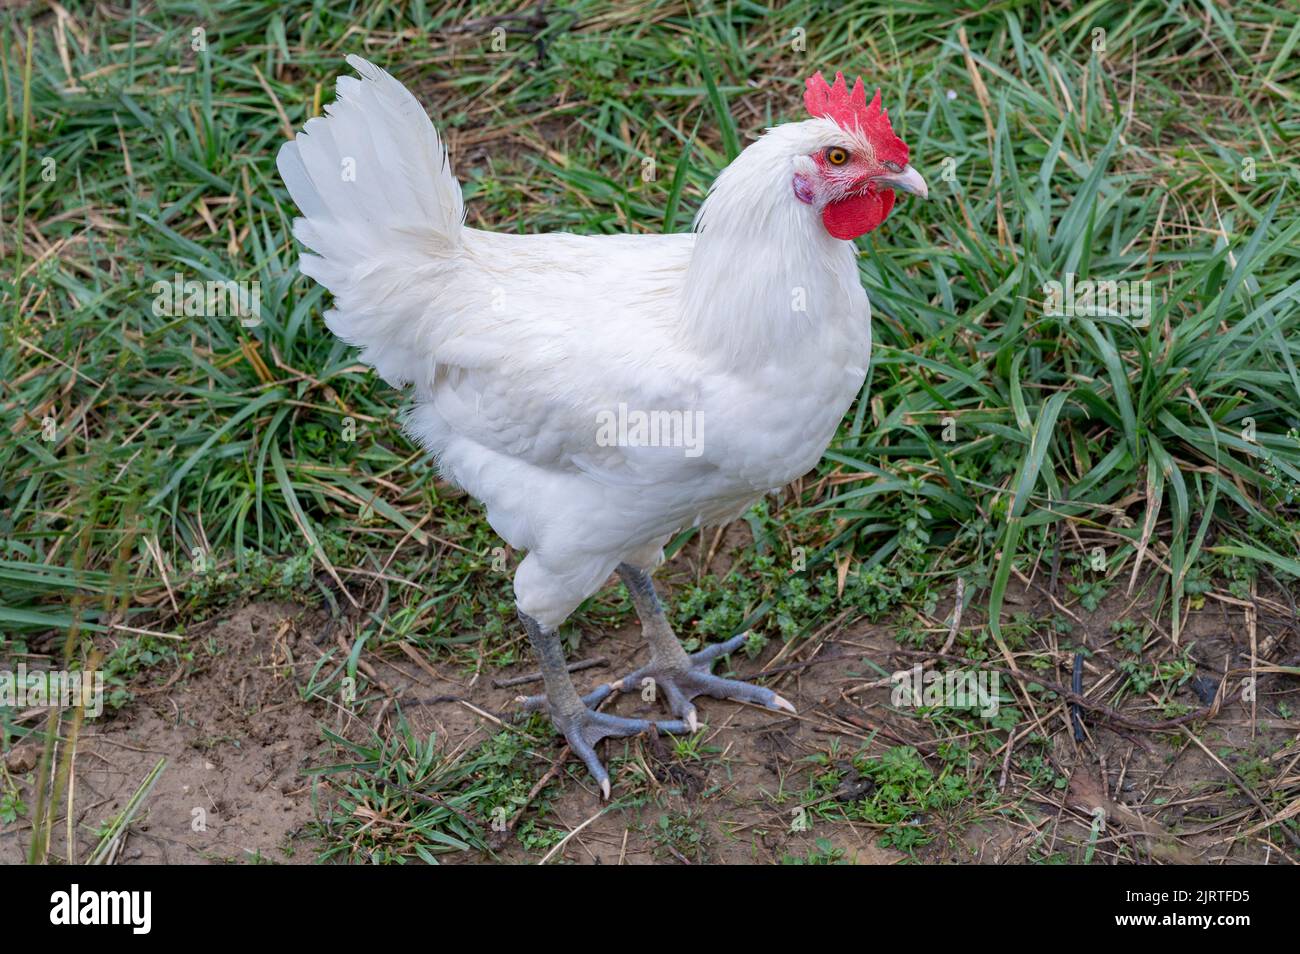 Bleu, rouge, blanc : le poulet de Bresse présente fièrement les couleurs nationales de la France et est donc très estimé comme la volaille nationale de France Banque D'Images